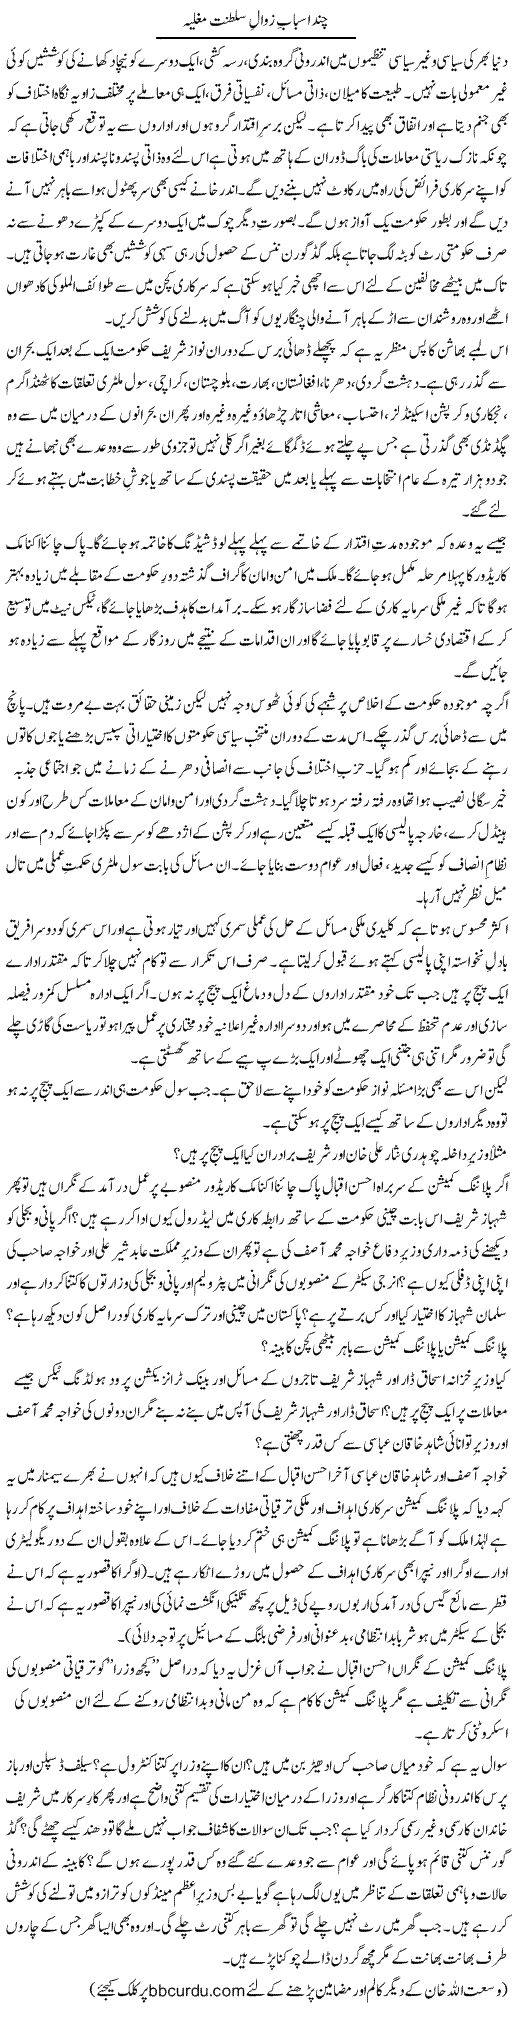 Chand Asbaab Zawaal Saltanat Mughlia | Wusat Ullah Khan | Daily Urdu Columns